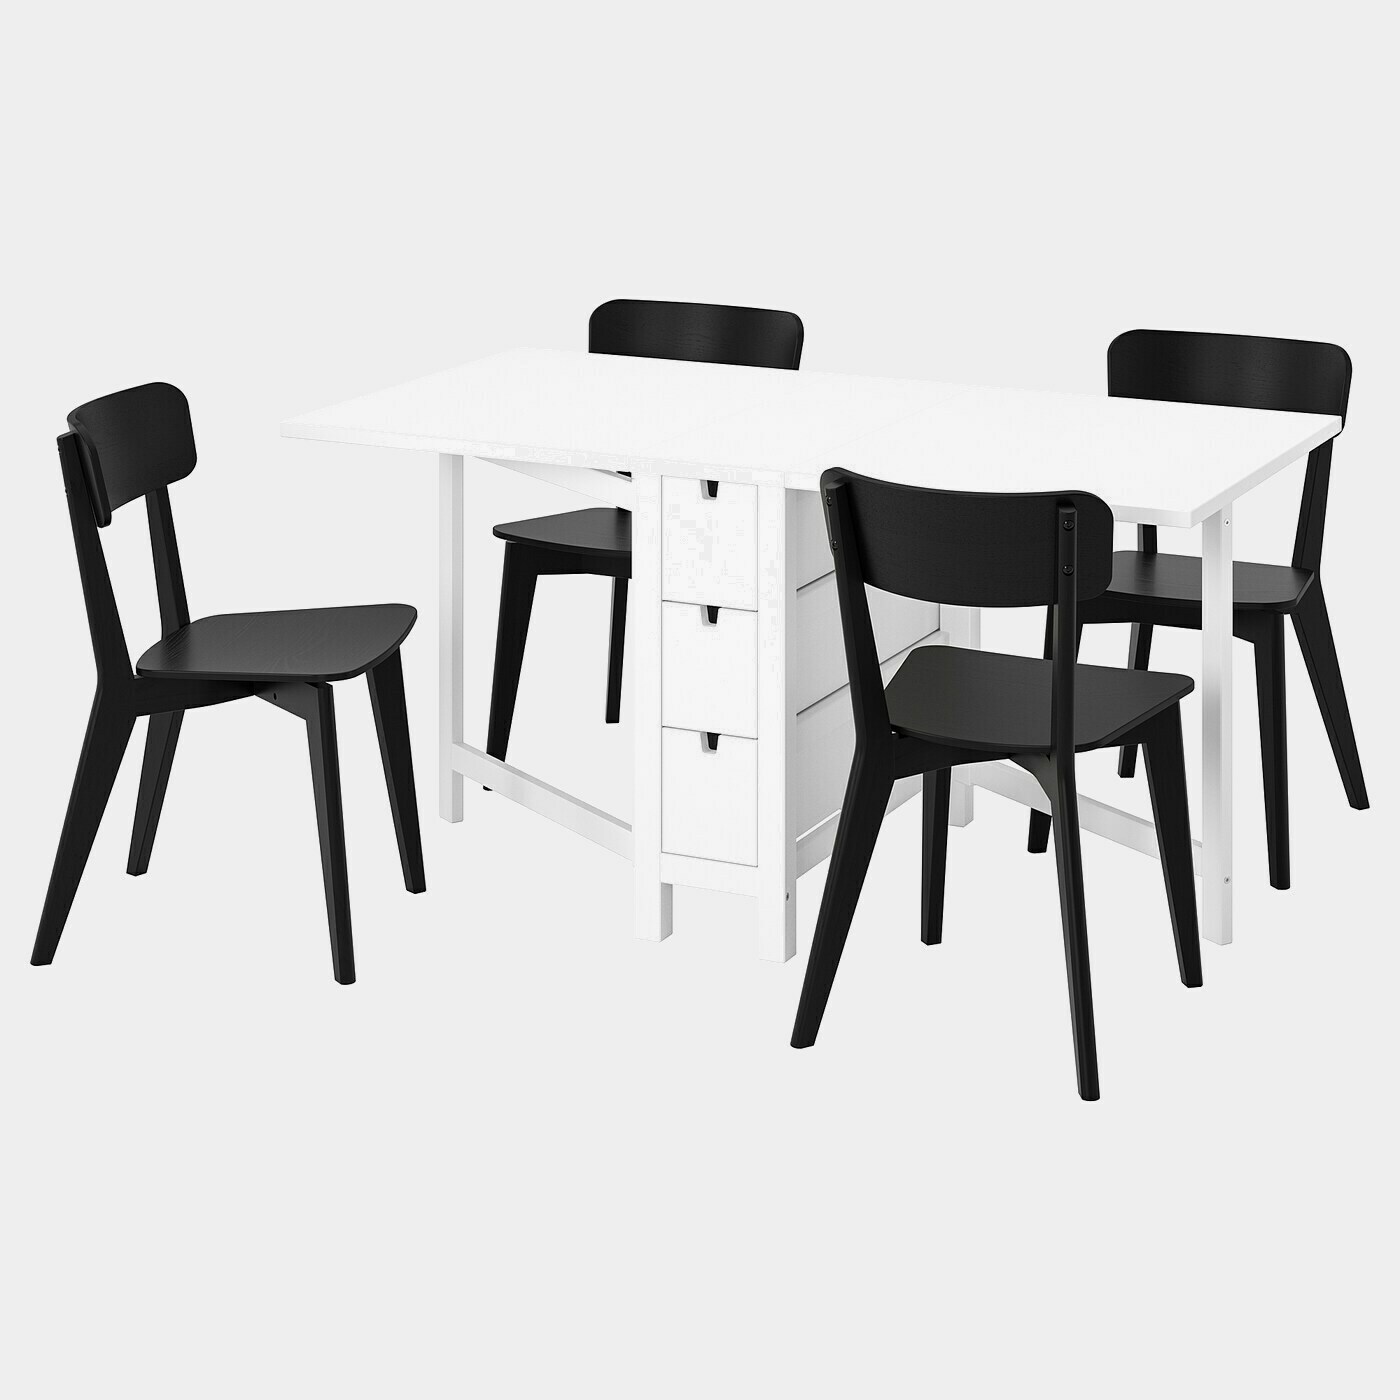 NORDEN / LISABO Tisch und 4 Stühle  -  - Möbel Ideen für dein Zuhause von Home Trends. Möbel Trends von Social Media Influencer für dein Skandi Zuhause.